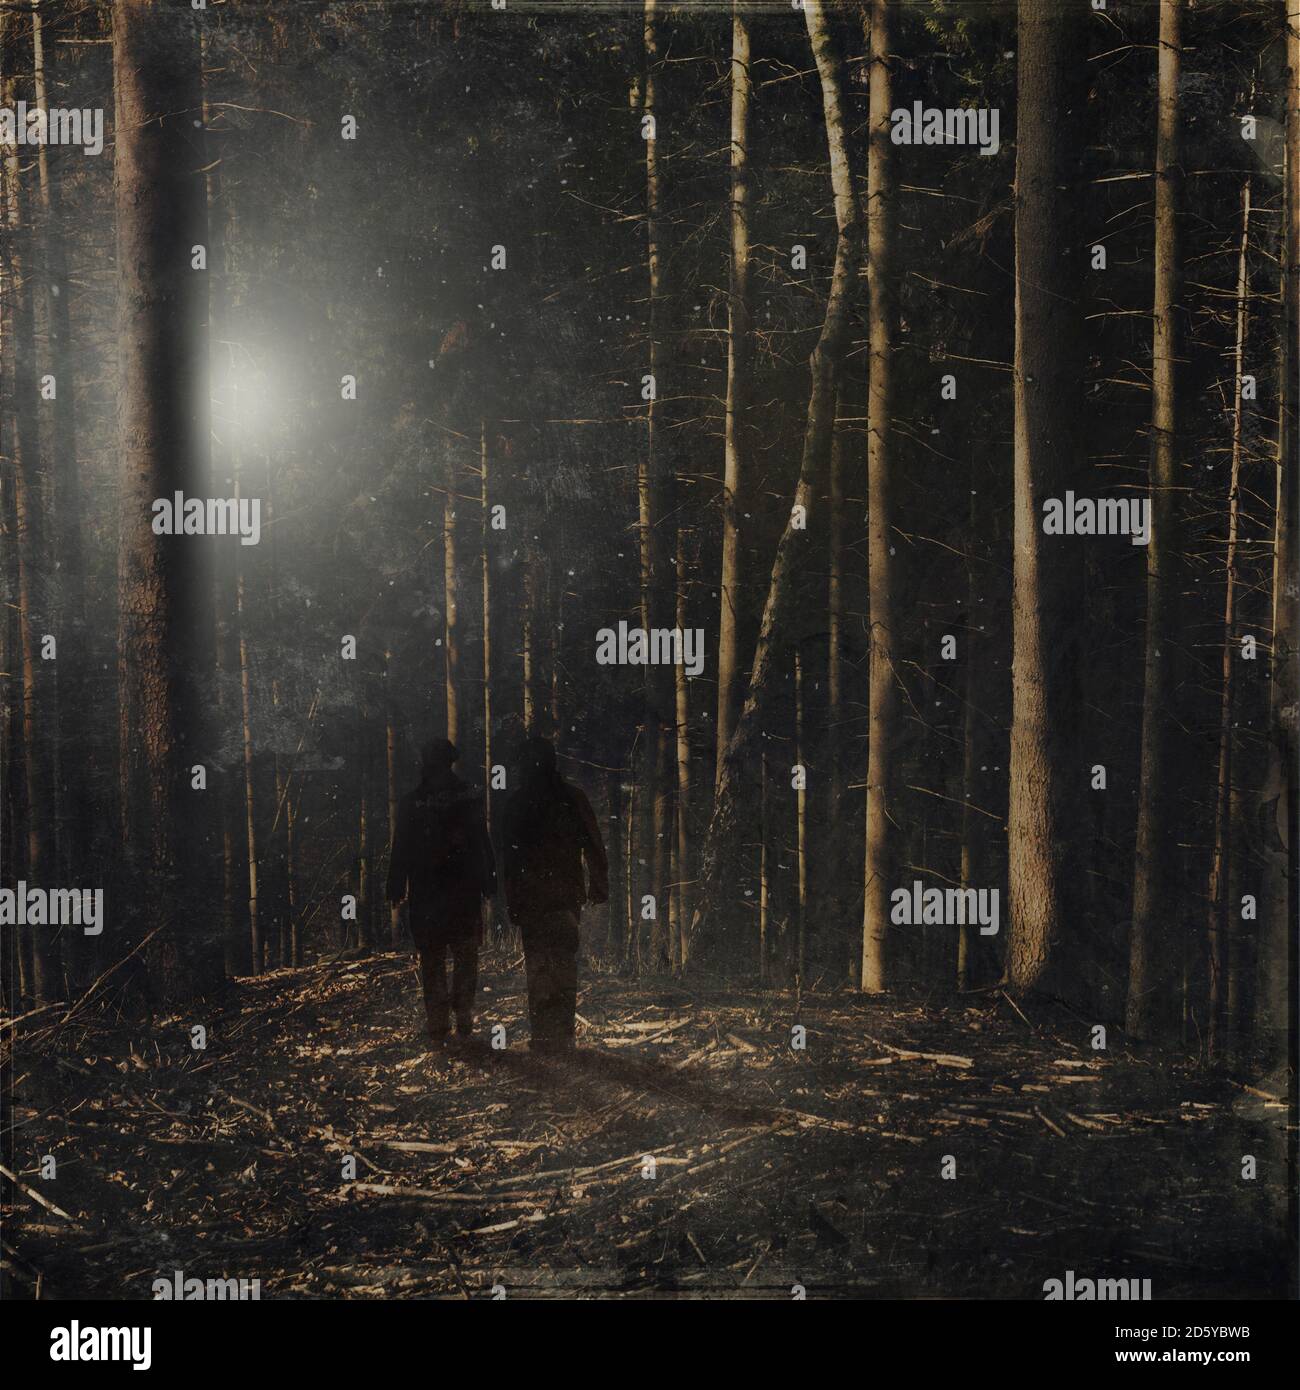 Deutschland, bei Wuppertal, zwei Personen im Wald, Digital Composite Stockfoto